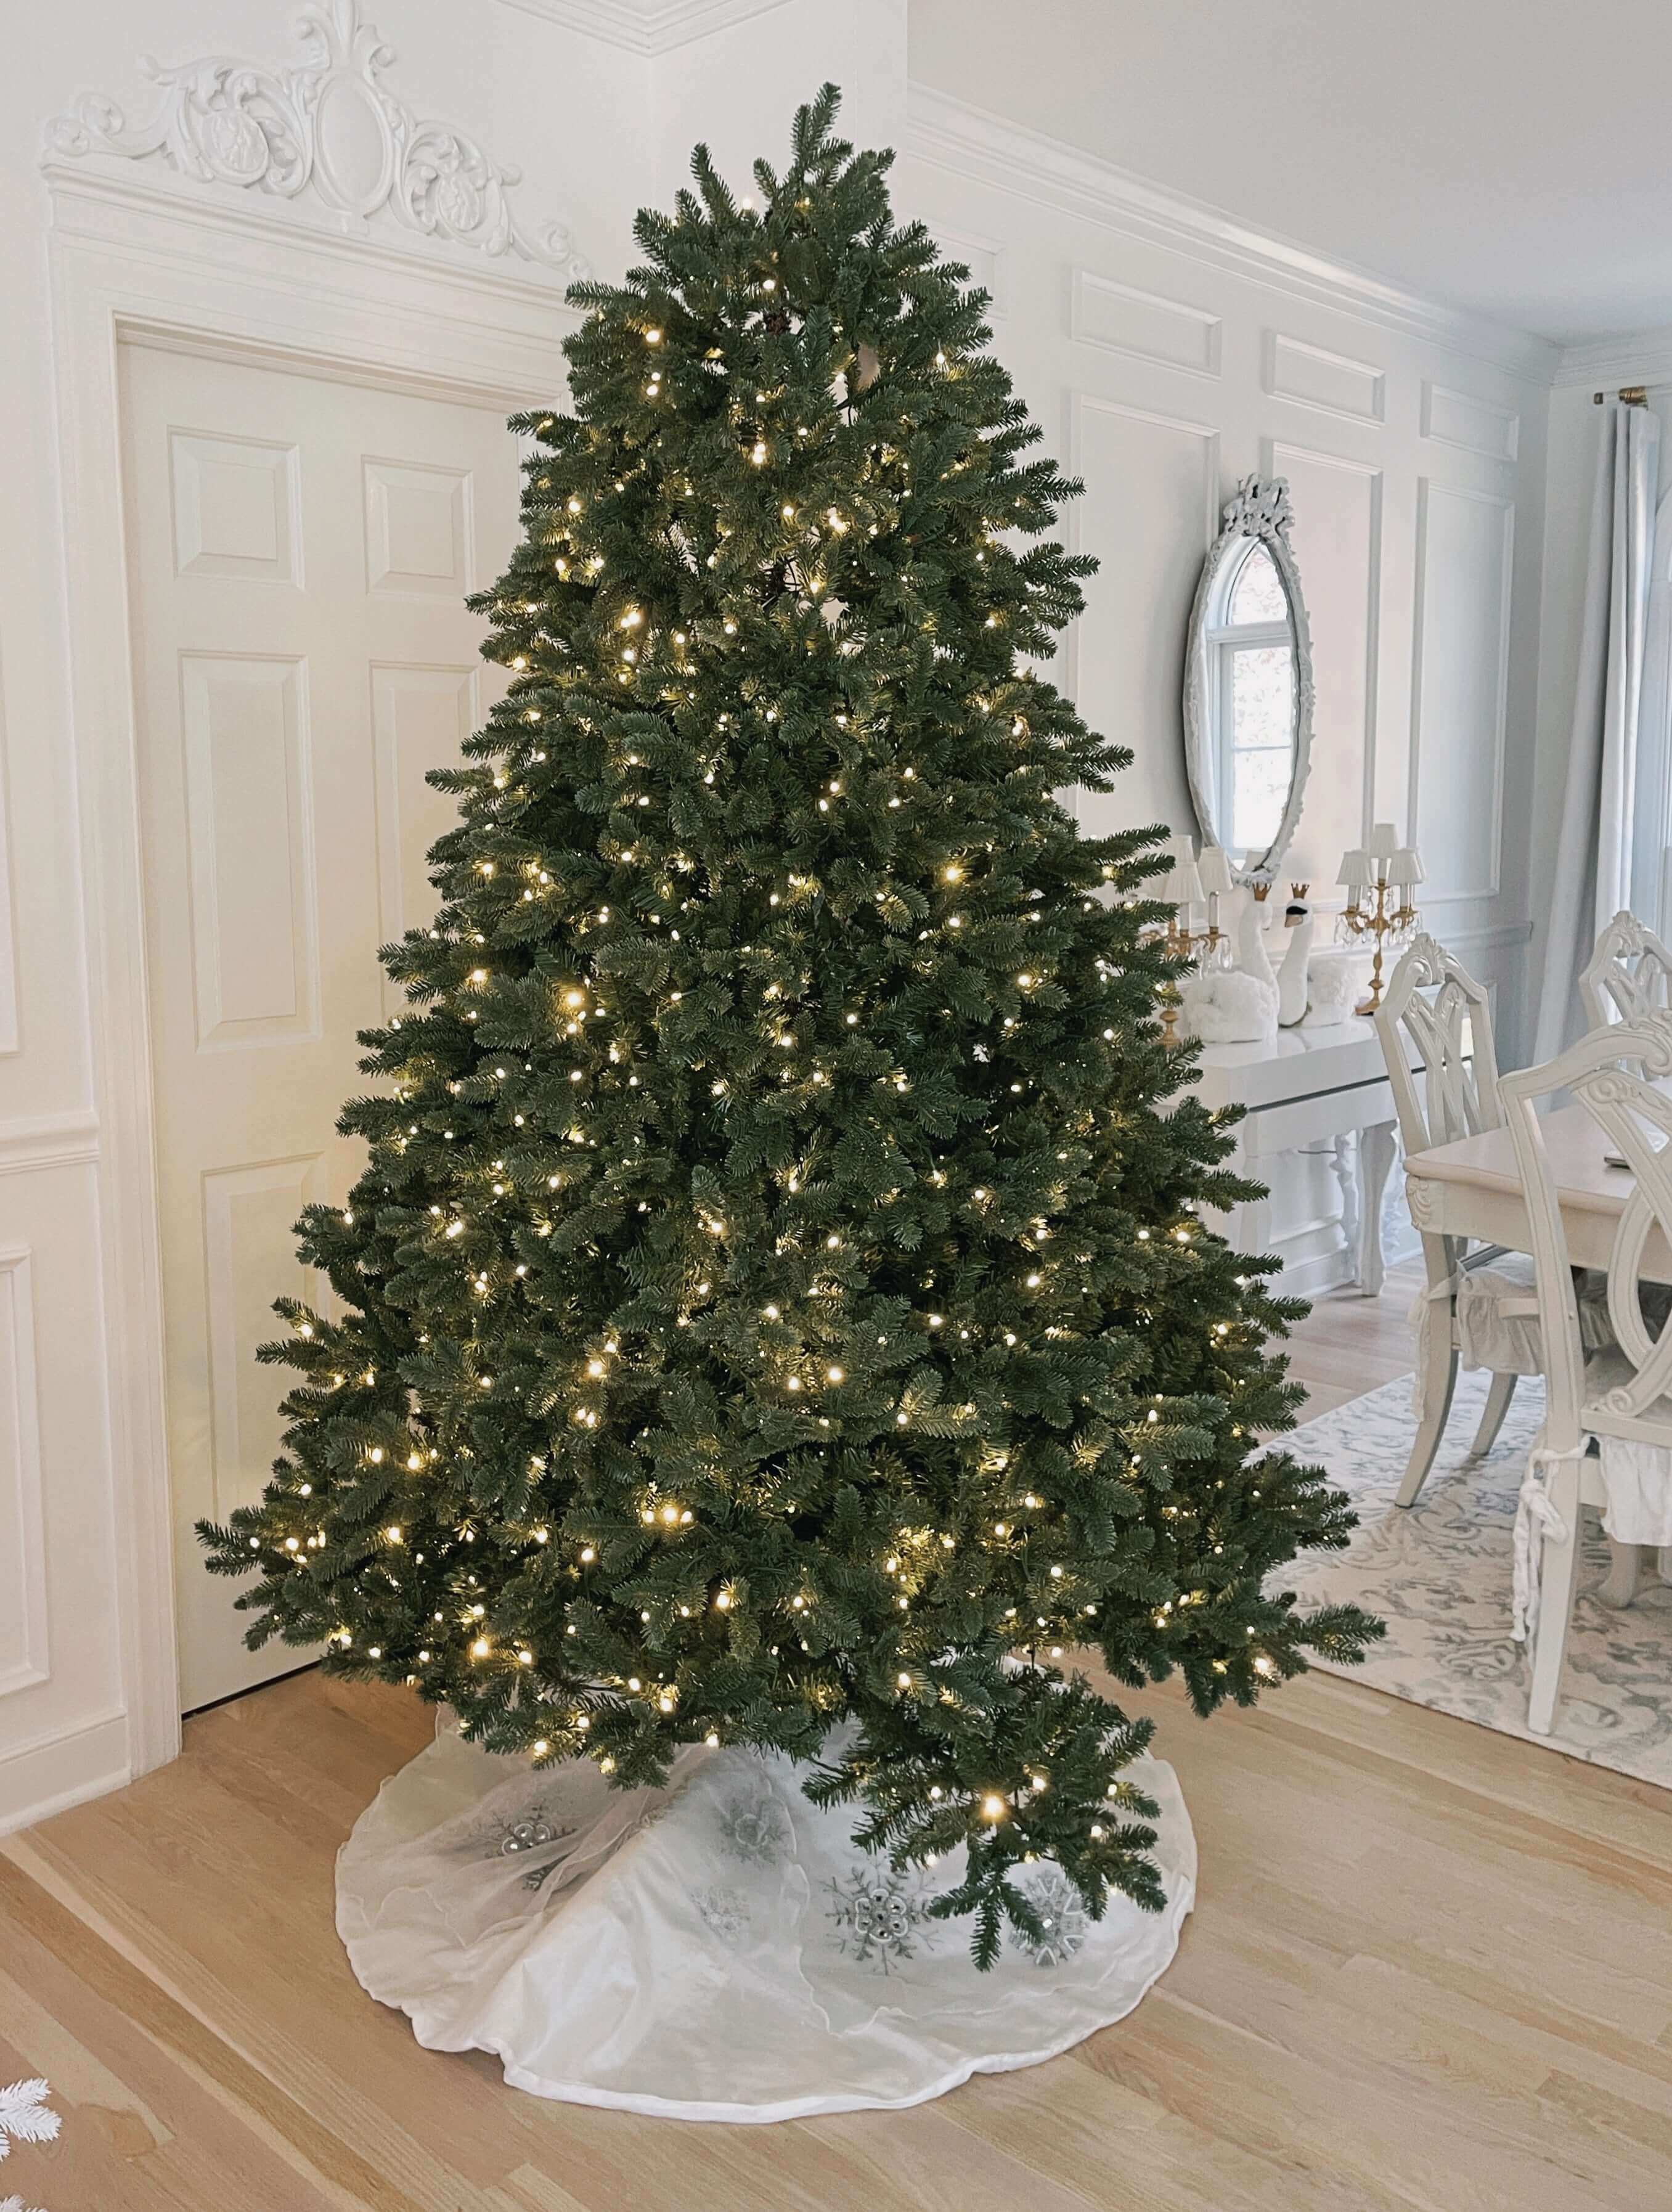 King of Christmas 9' Aspen Fir Quick-Shape Tree Unlit